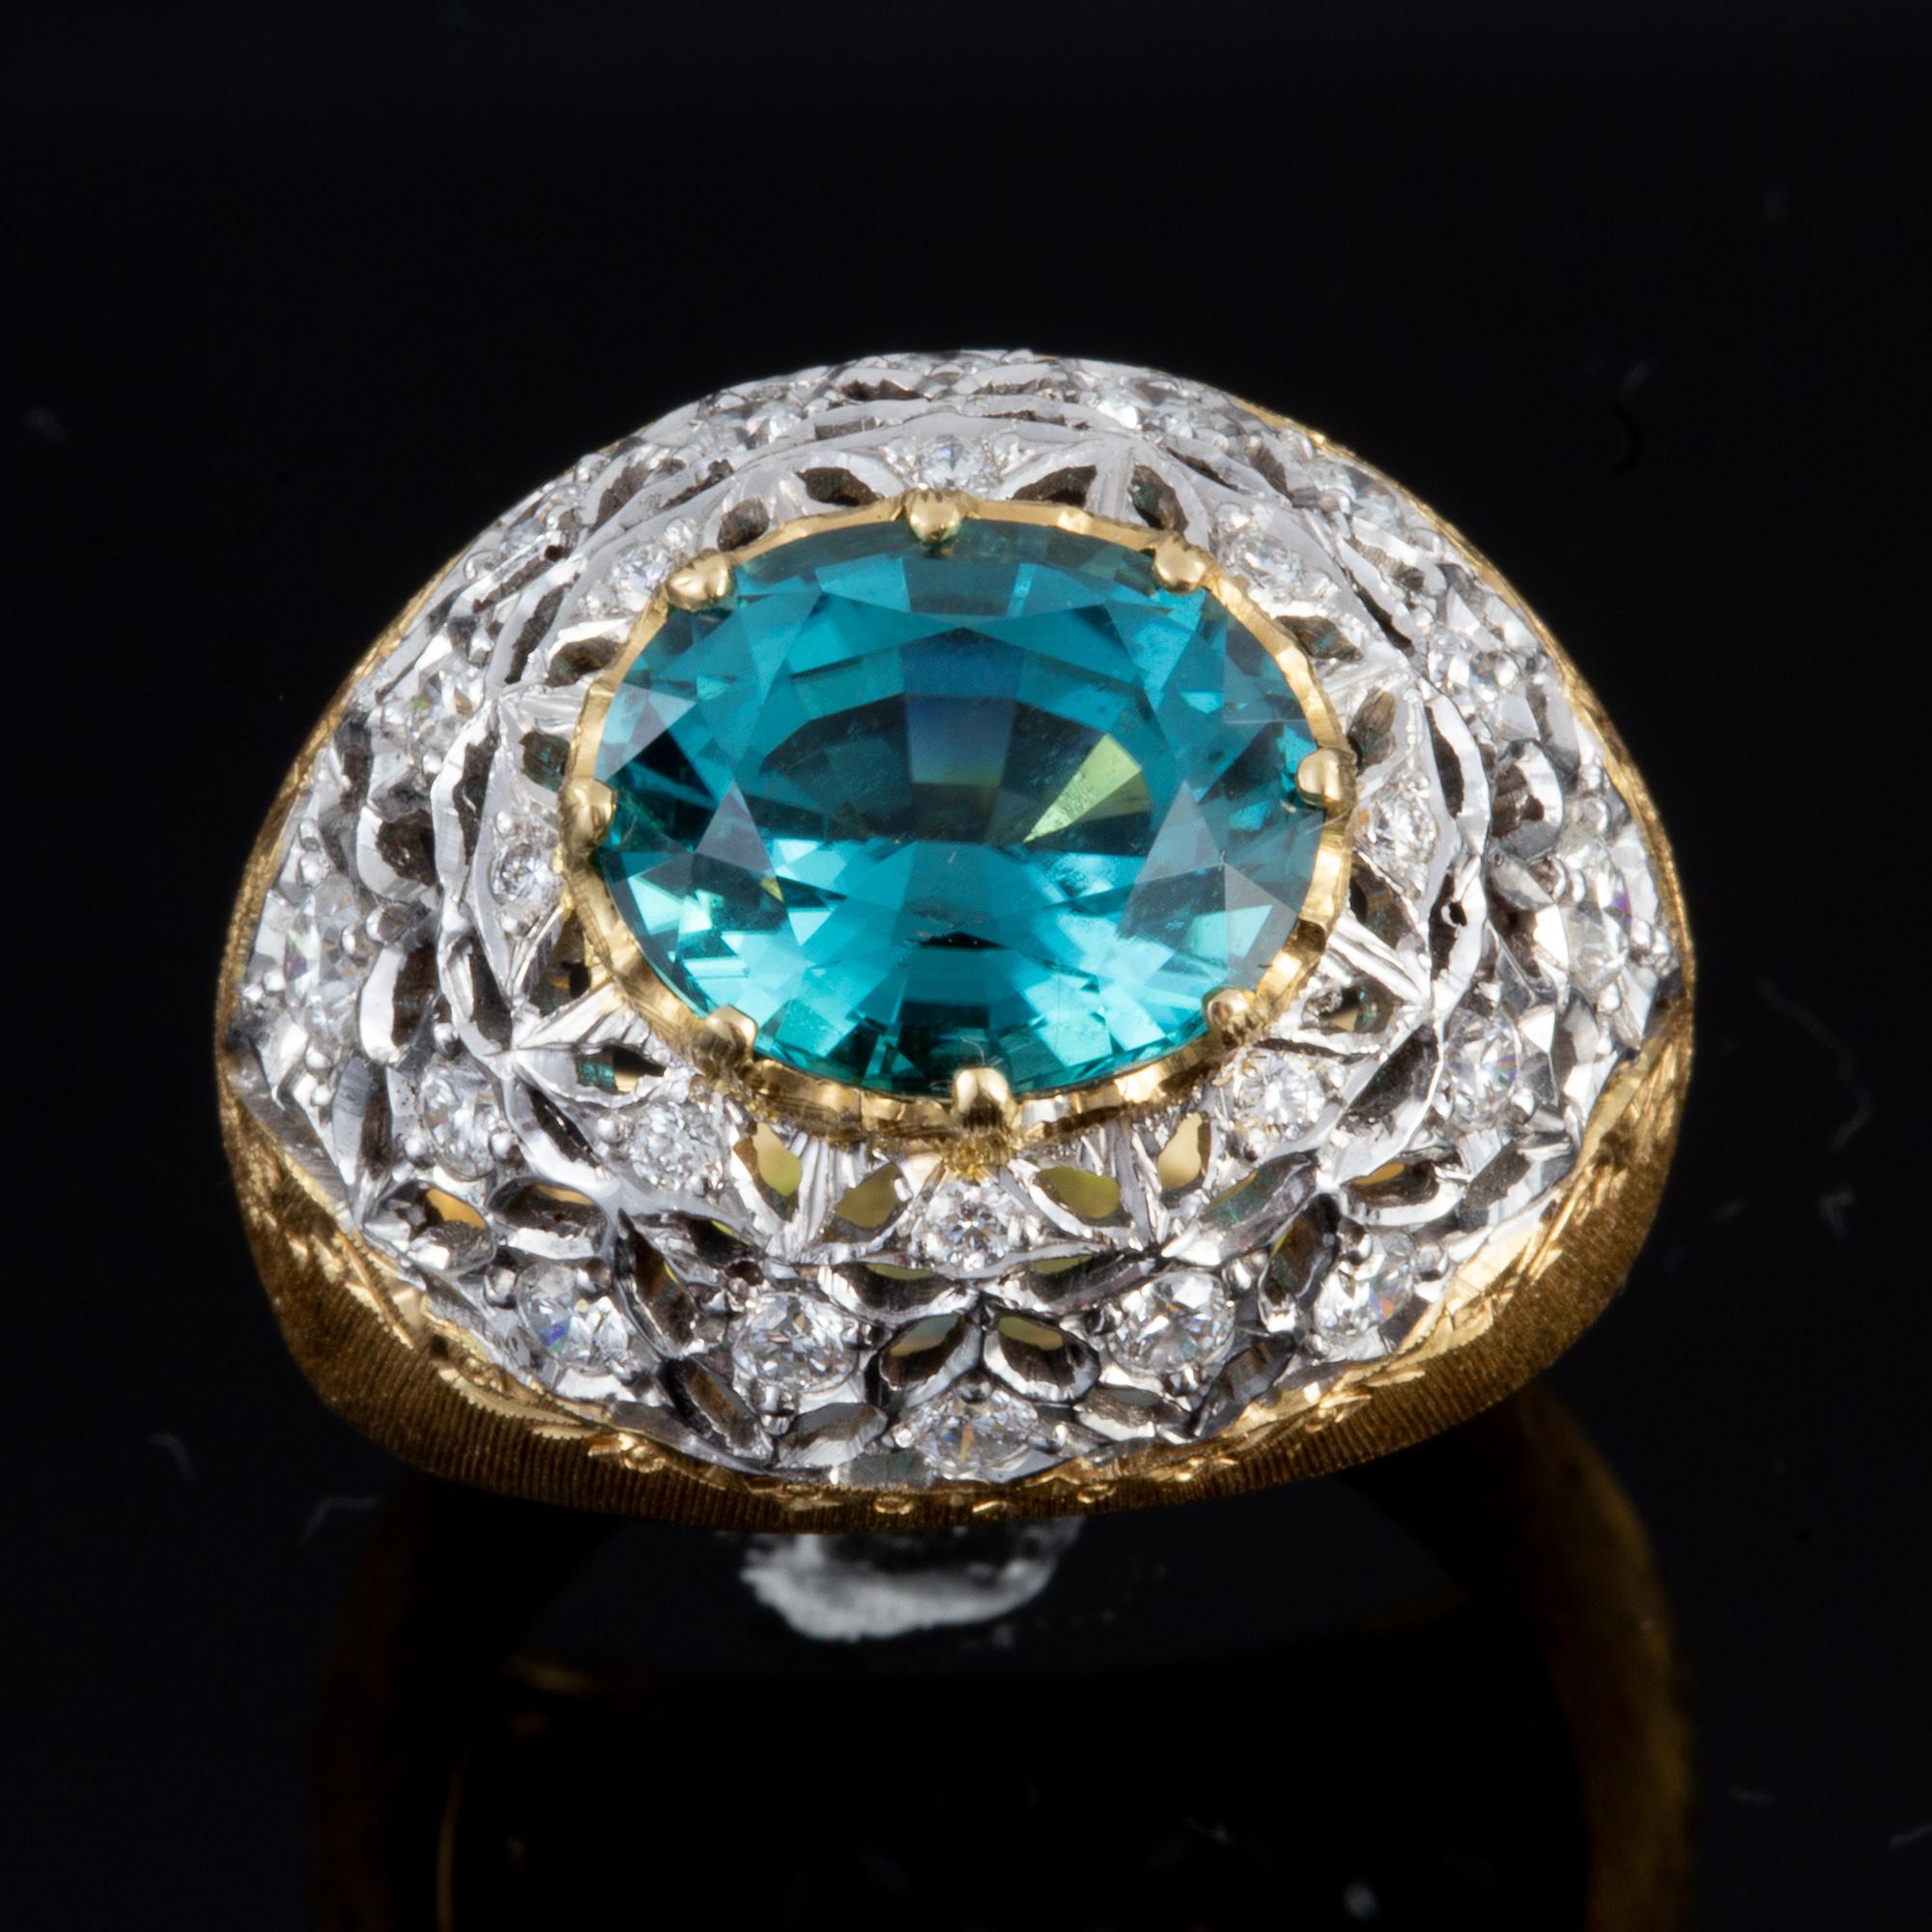 Dieser exquisite blau-grüne Turmalin- und Diamantring wird in Italien im alten florentinischen Stil handgefertigt und ist in zweifarbigem 18-karätigem Gold gefasst, was ihn zu einem wahrhaft schönen Schmuckstück macht.  In einem kleinen